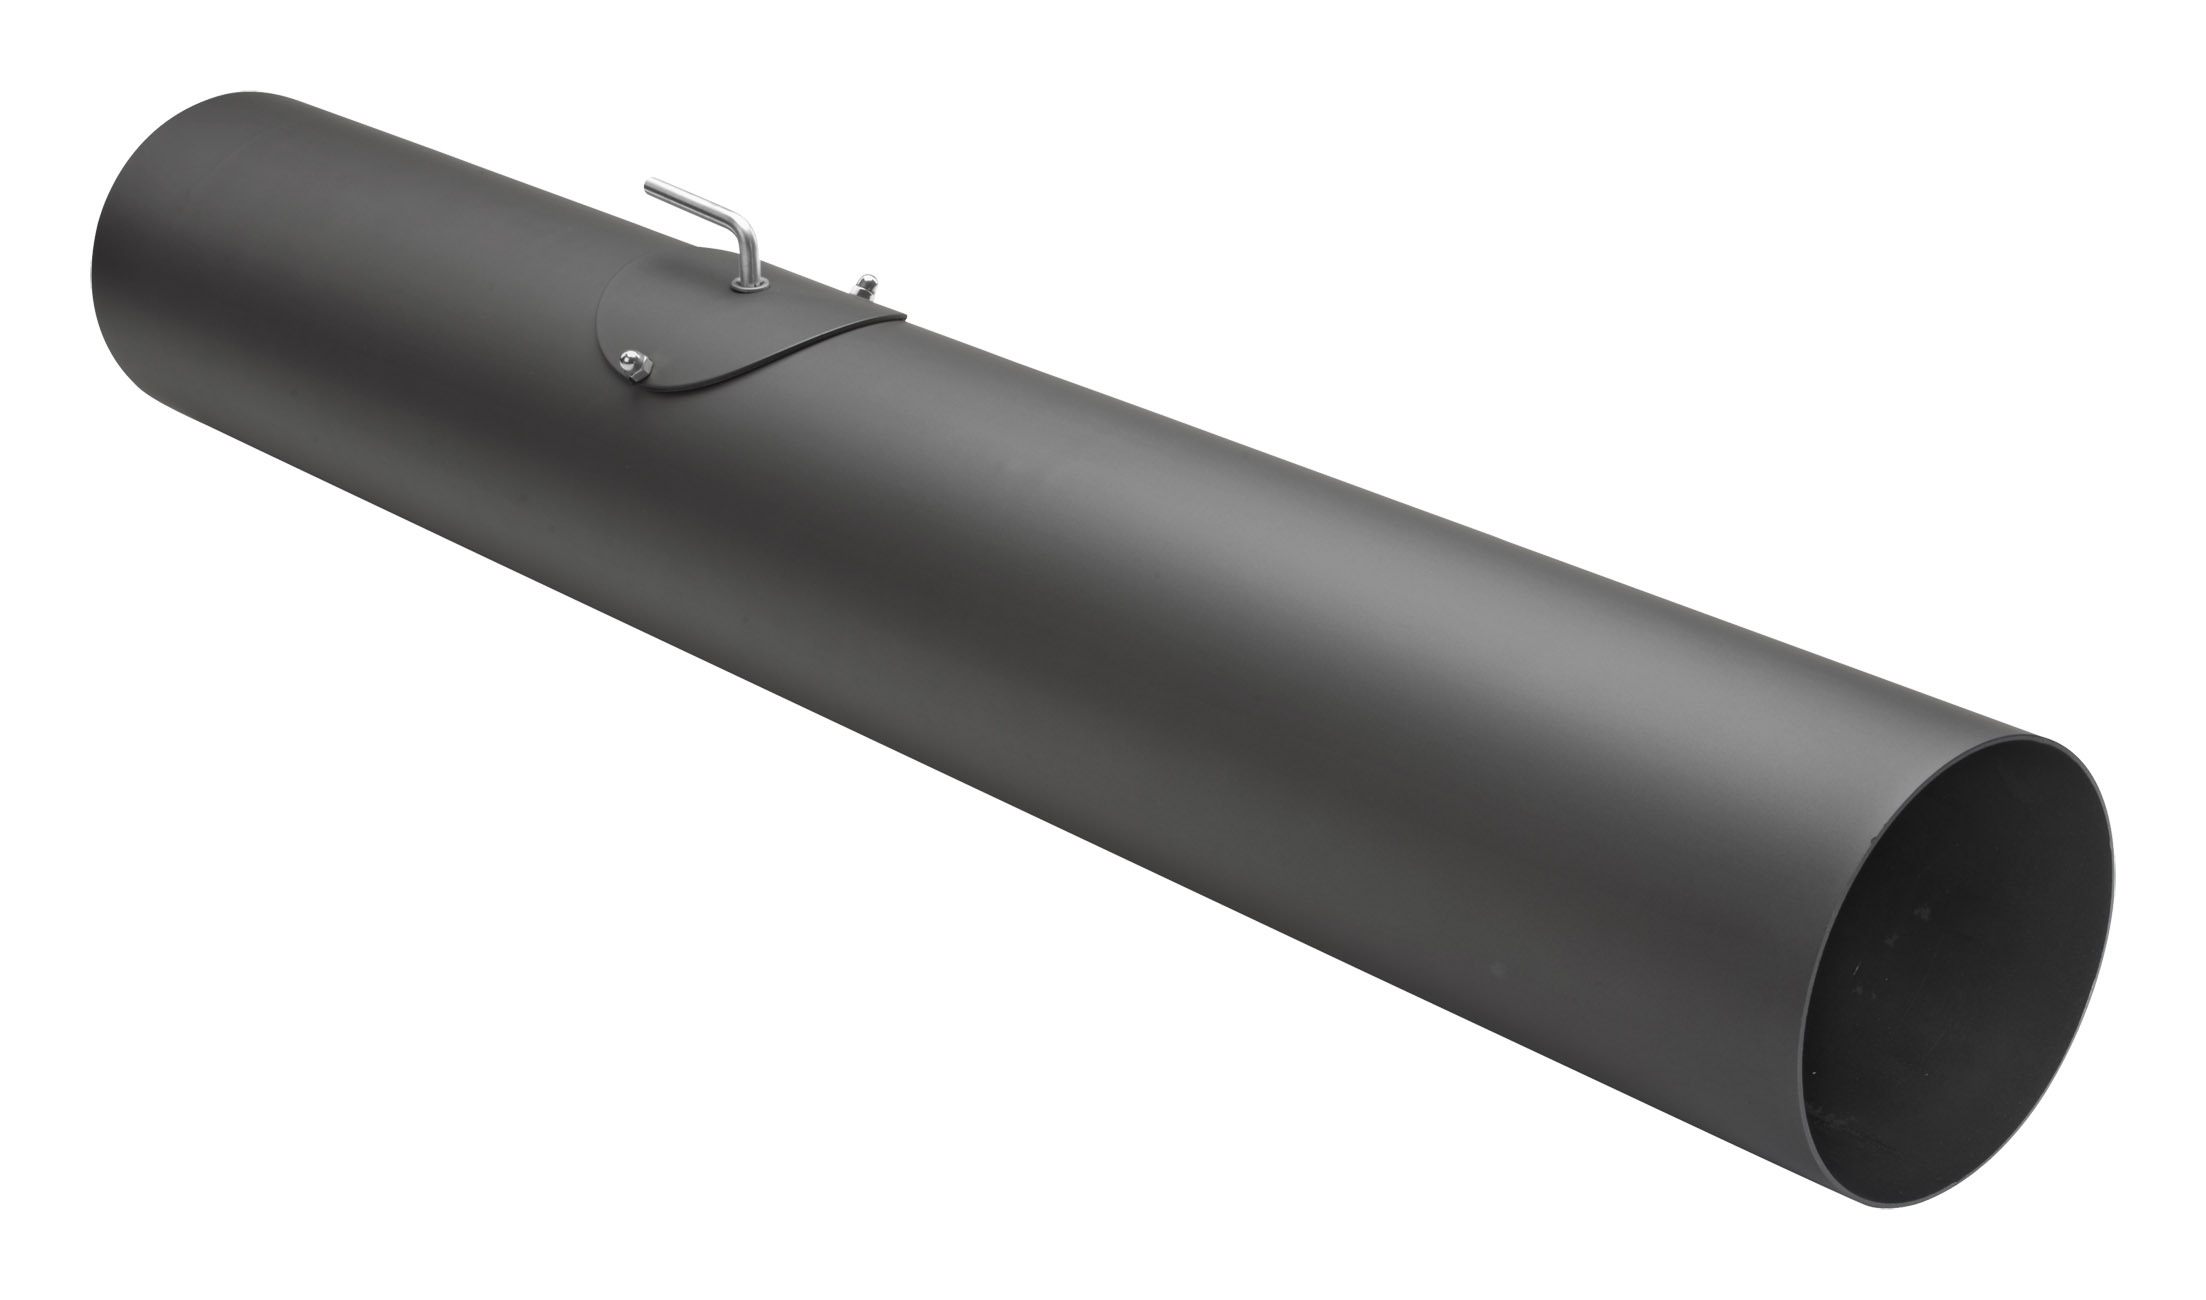 Rauchrohr Stahl 1000 mm Ø 150 mm schwarz mit Tür, Drosselklappe, Kondensring, Kugelfang